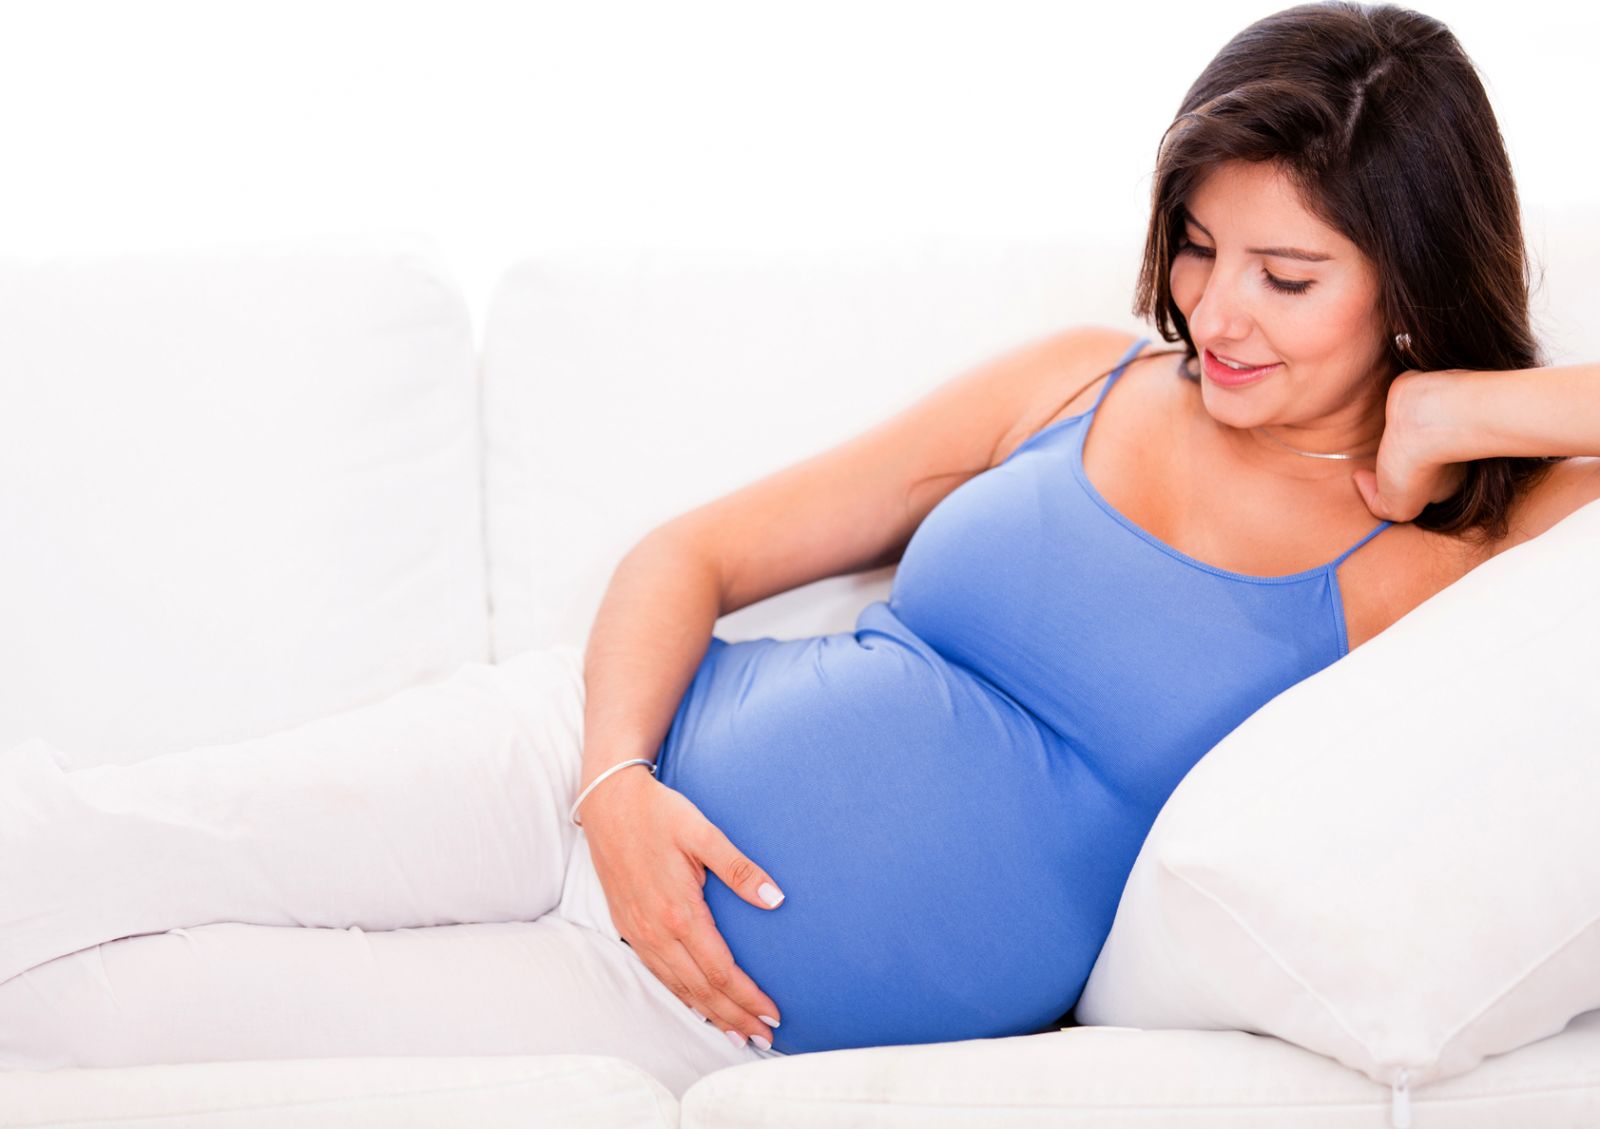 Беременная девушка в синей майке